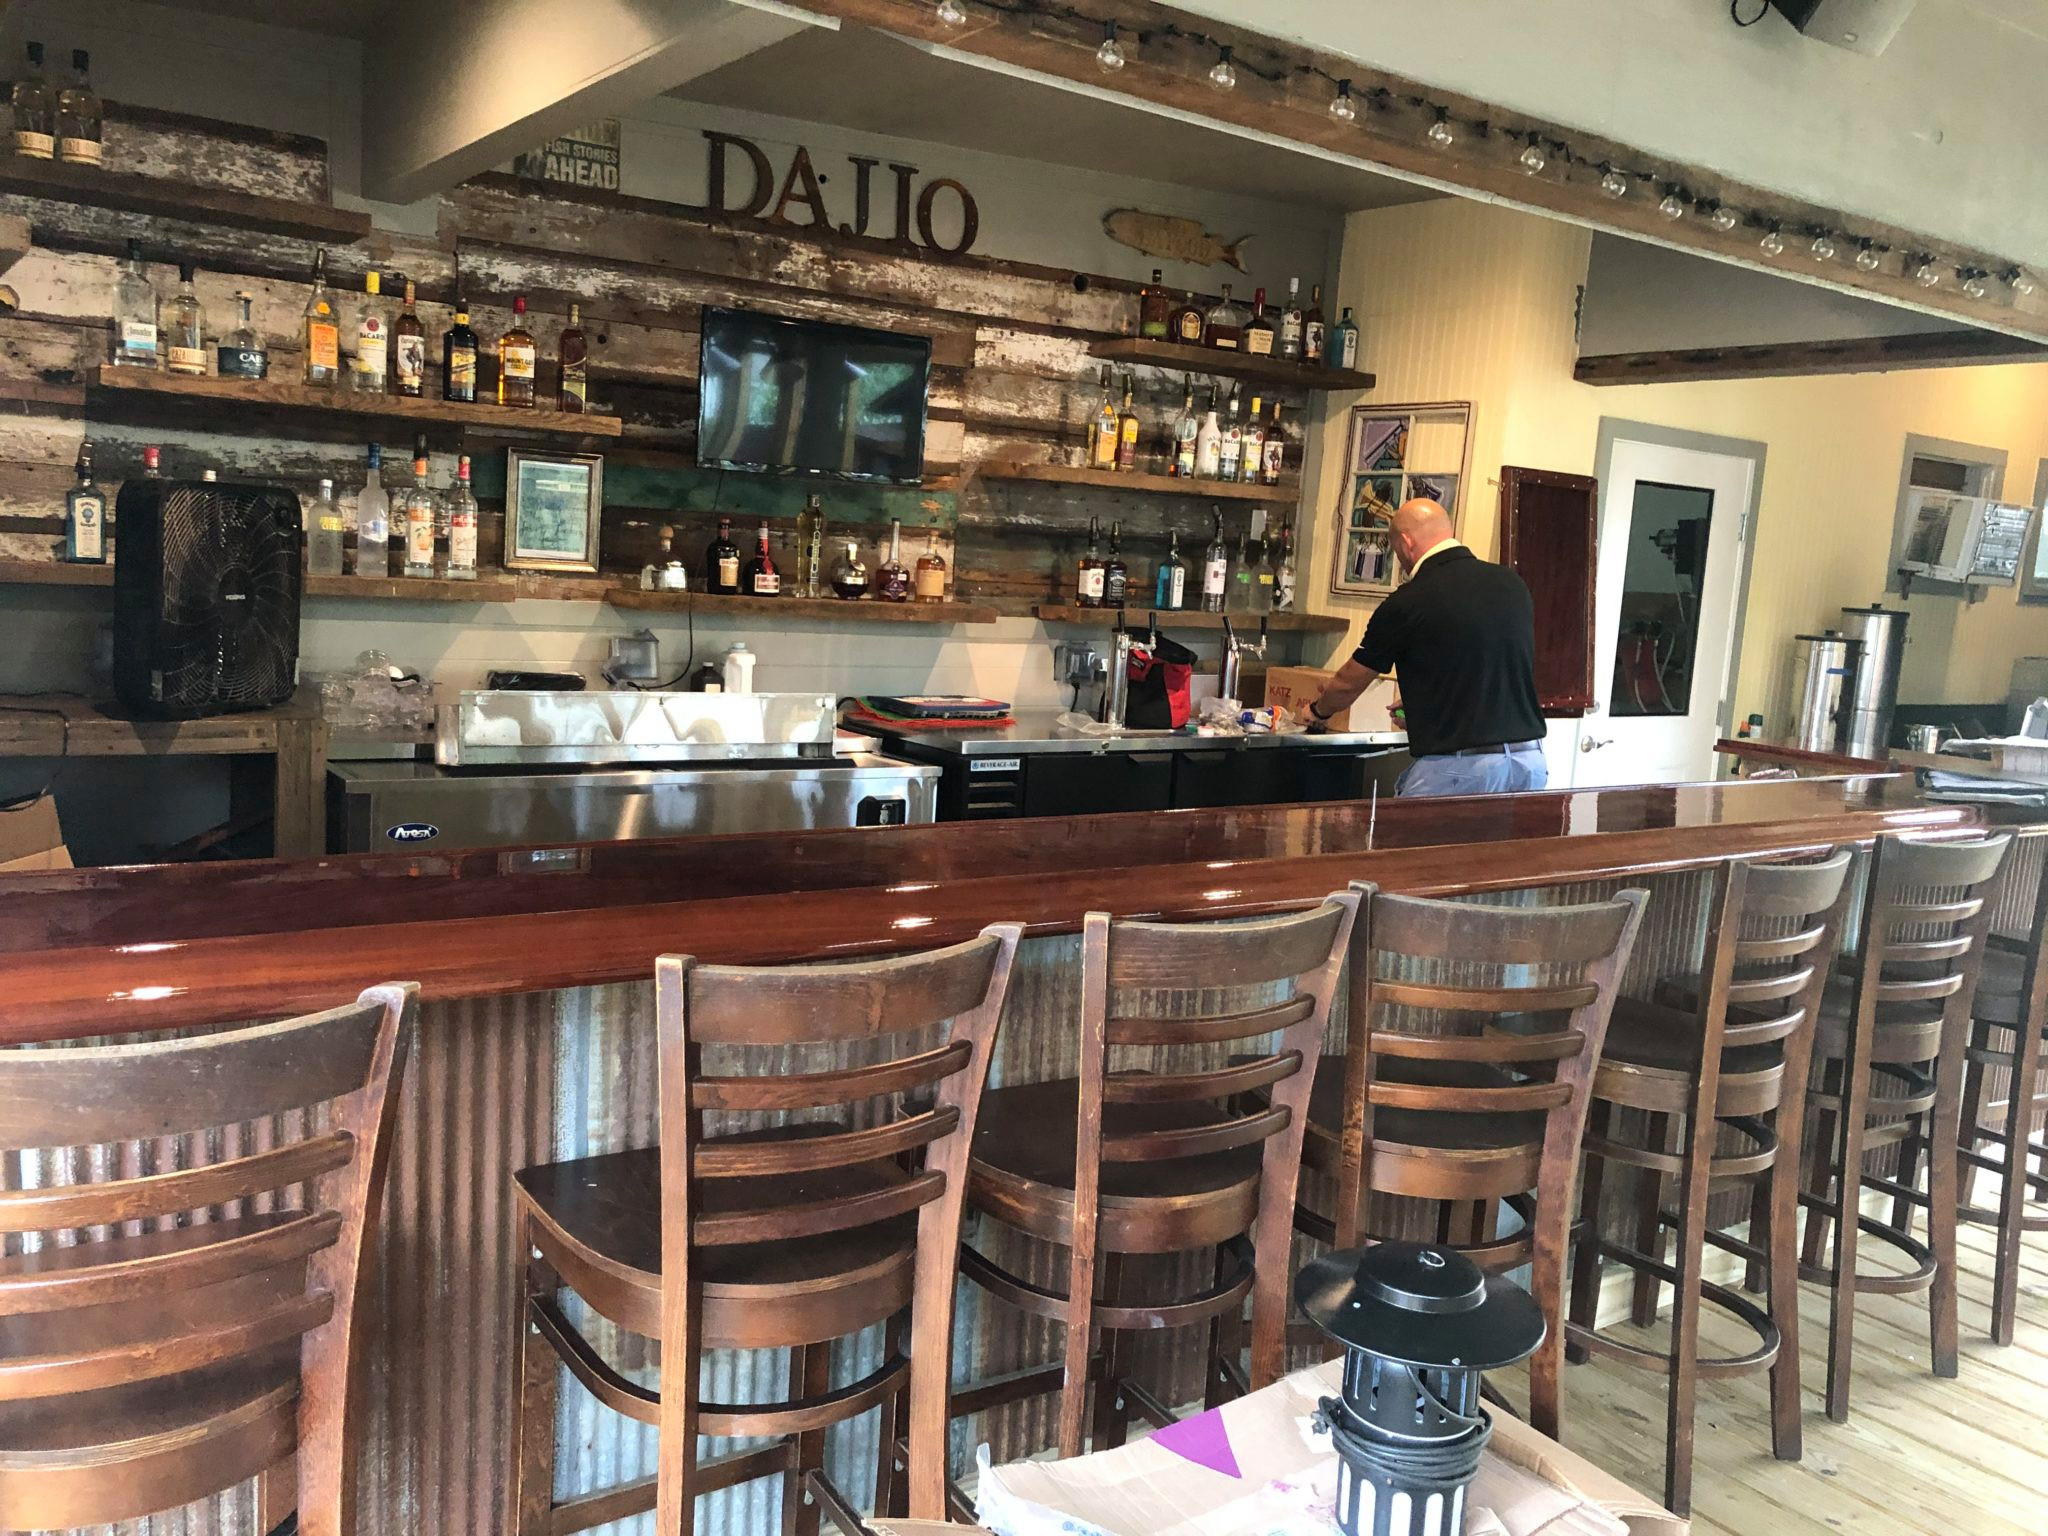 Daijo  Restaurant Bar